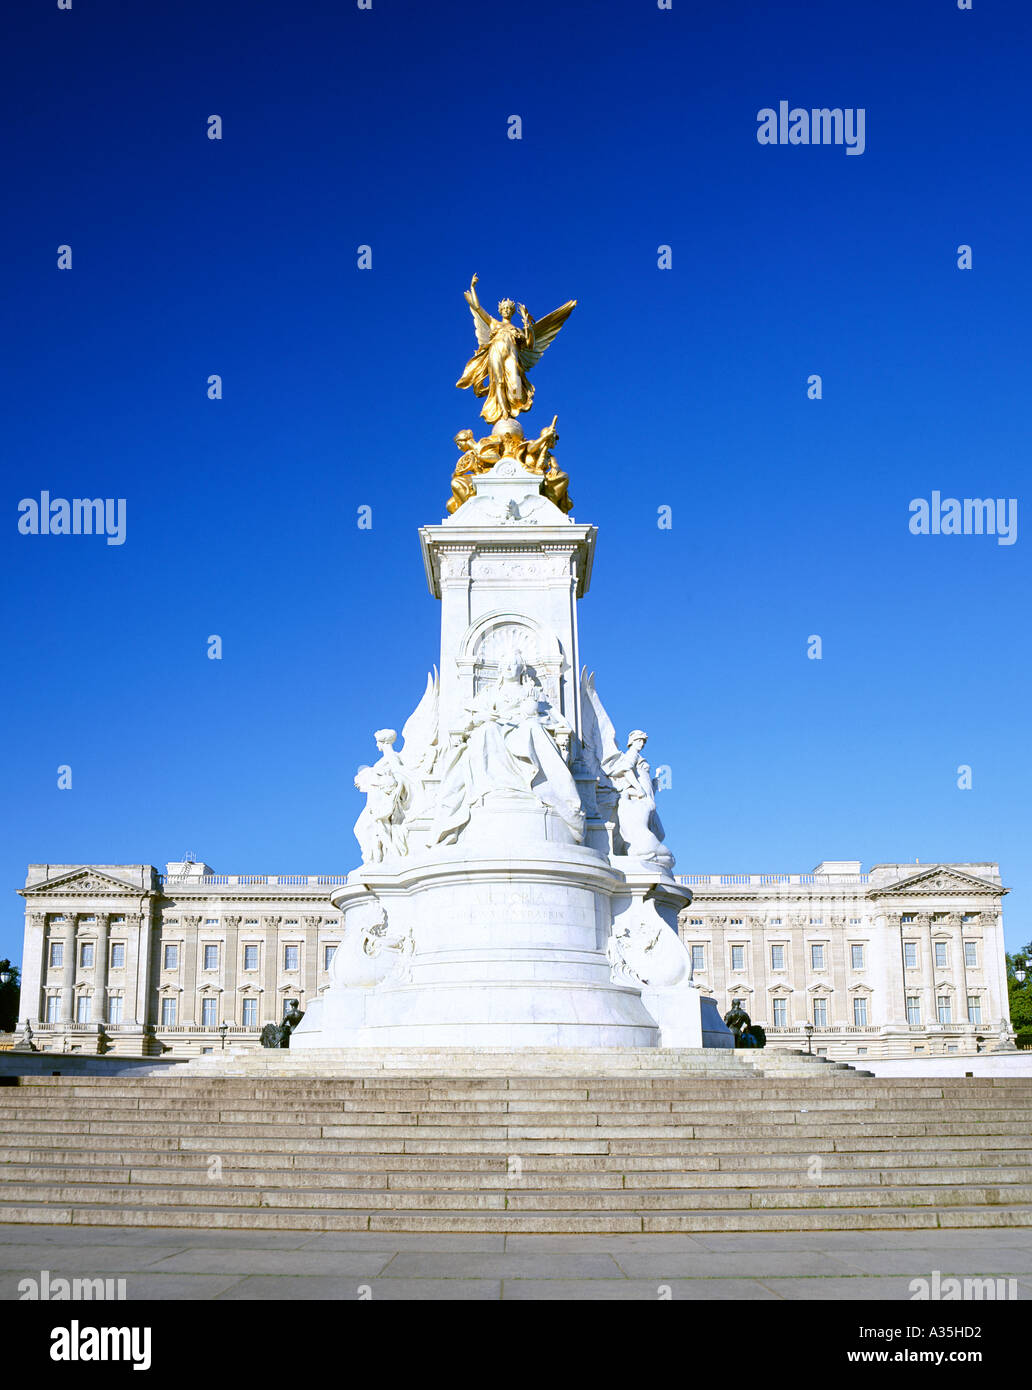 La statue de la reine Victoria devant le palais de Buckingham à Londres. Banque D'Images